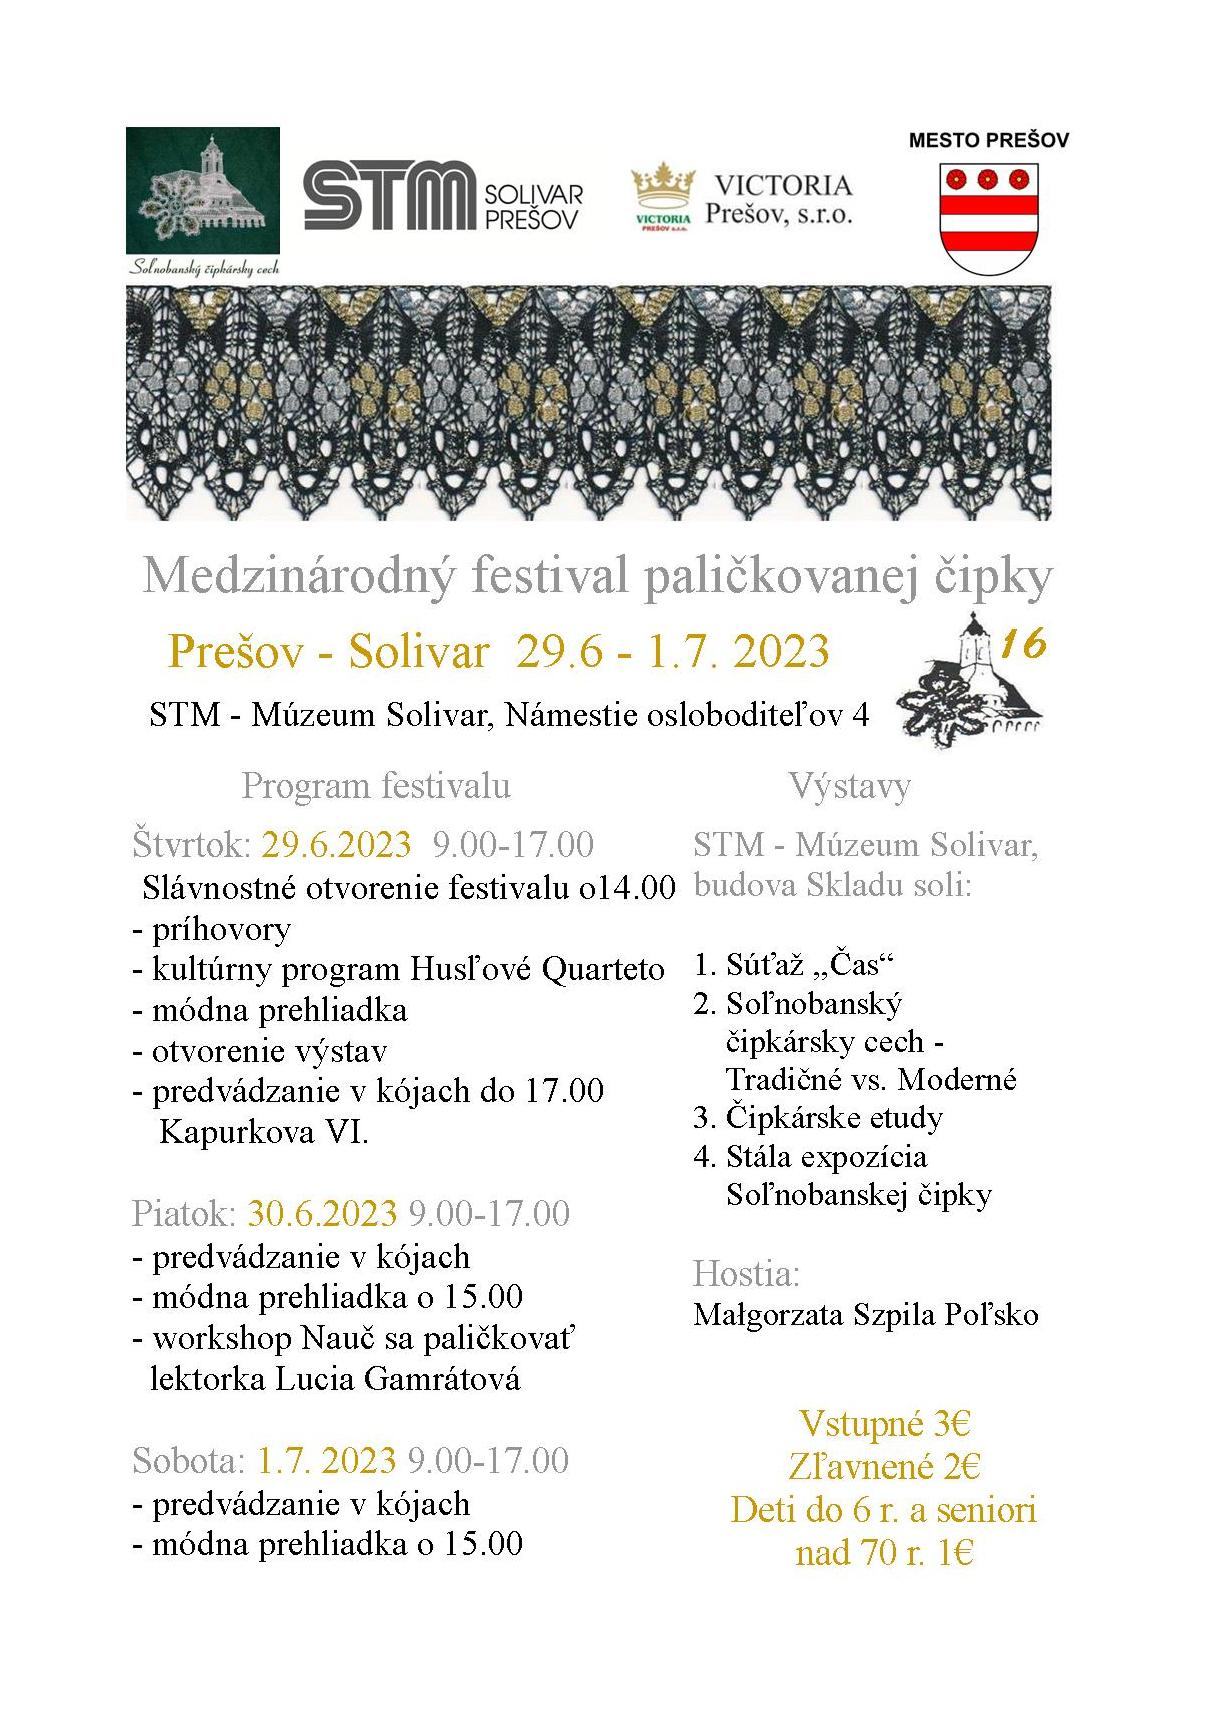 Medzinárodný festival paličkovanej čipky 2023 Prešov - Solivar 